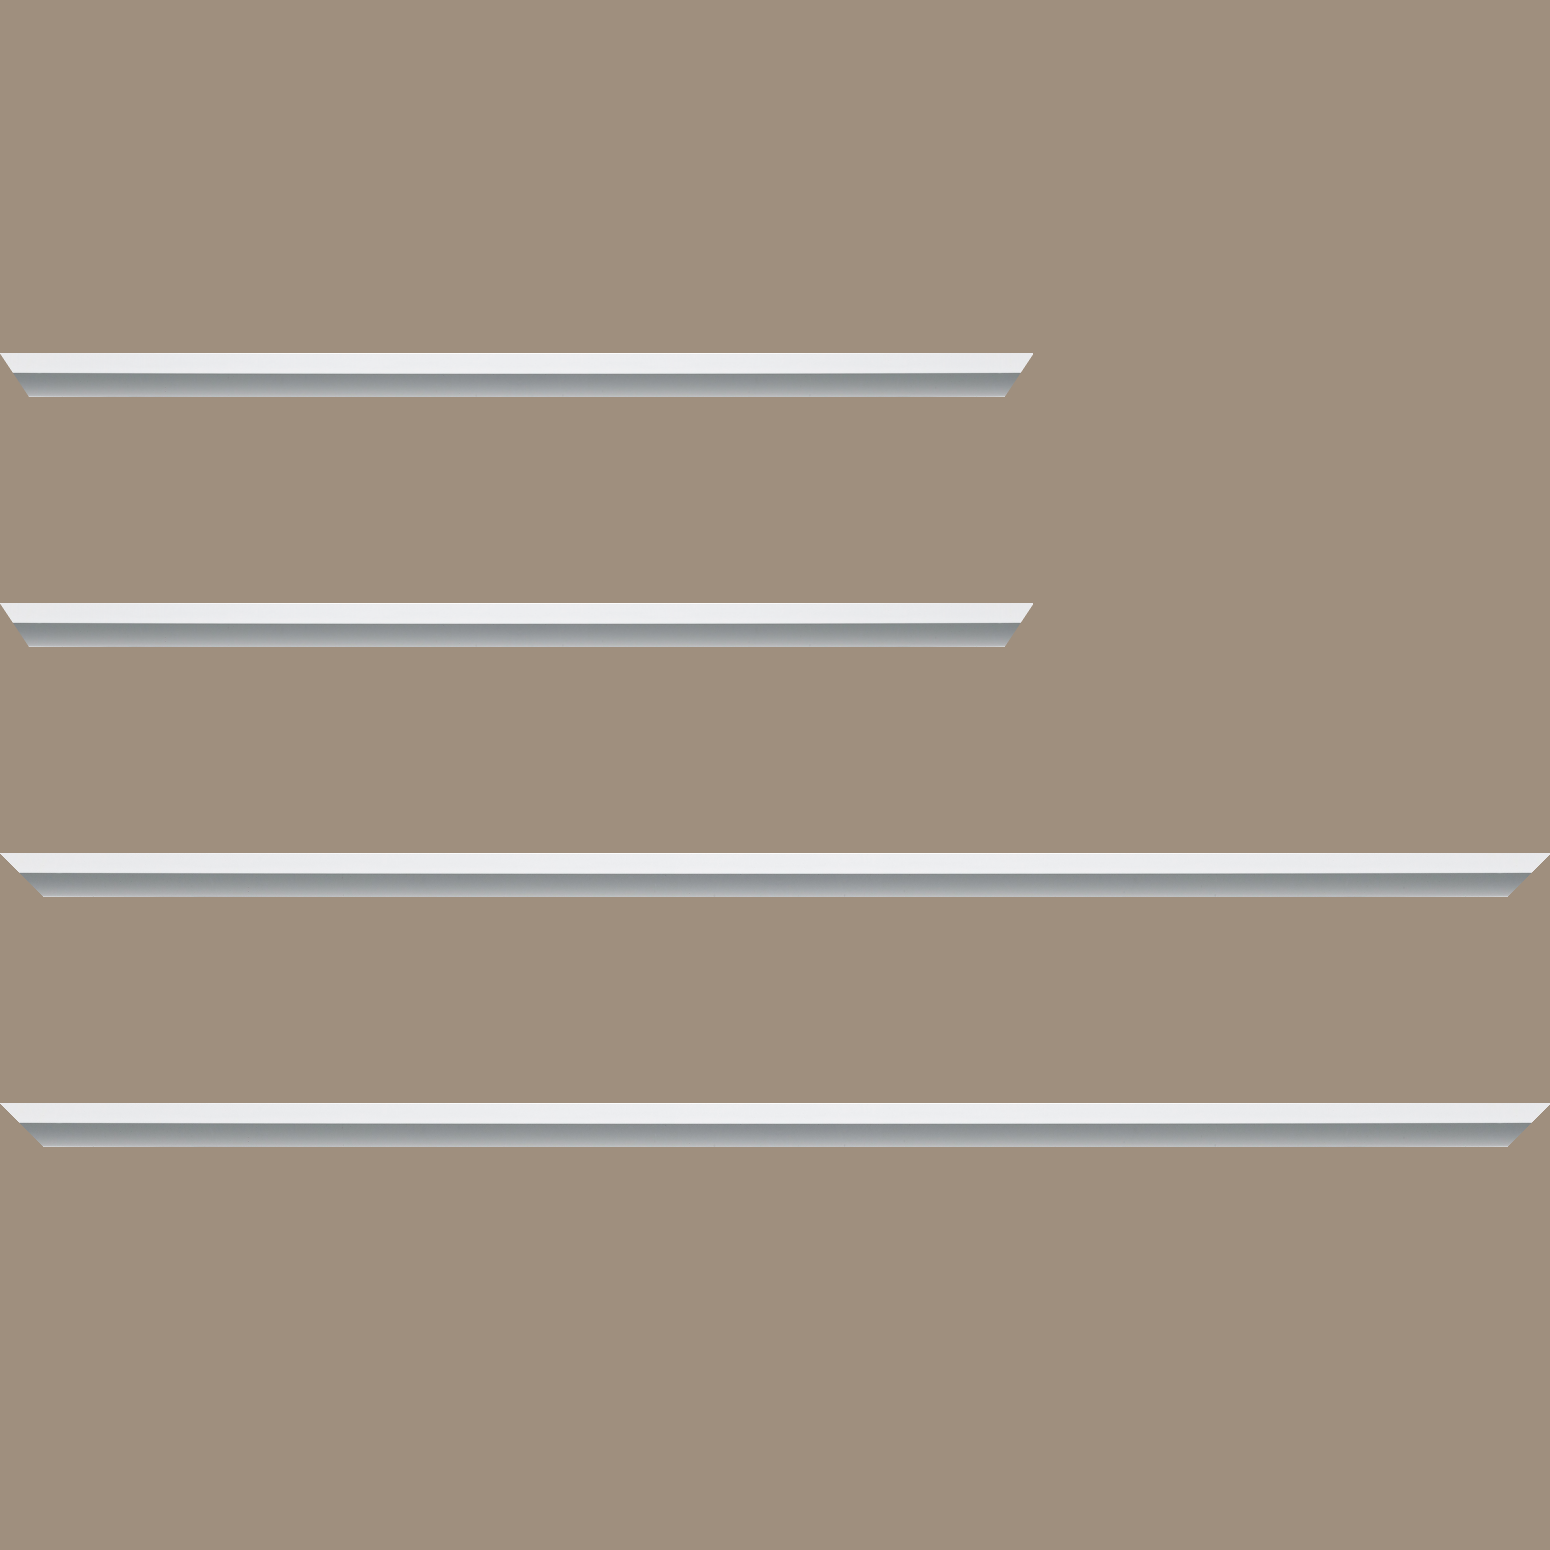 Baguette aluminium profil plat largeur 7mm, couleur blanc mat ,(le sujet qui sera glissé dans le cadre sera en retrait de 9mm de la face du cadre assurant un effet très contemporain) mise en place du sujet rapide et simple: assemblage du cadre par double équerre à vis (livré avec le système d'accrochage qui se glisse dans le profilé) encadrement non assemblé,  livré avec son sachet d'accessoires - 34x40